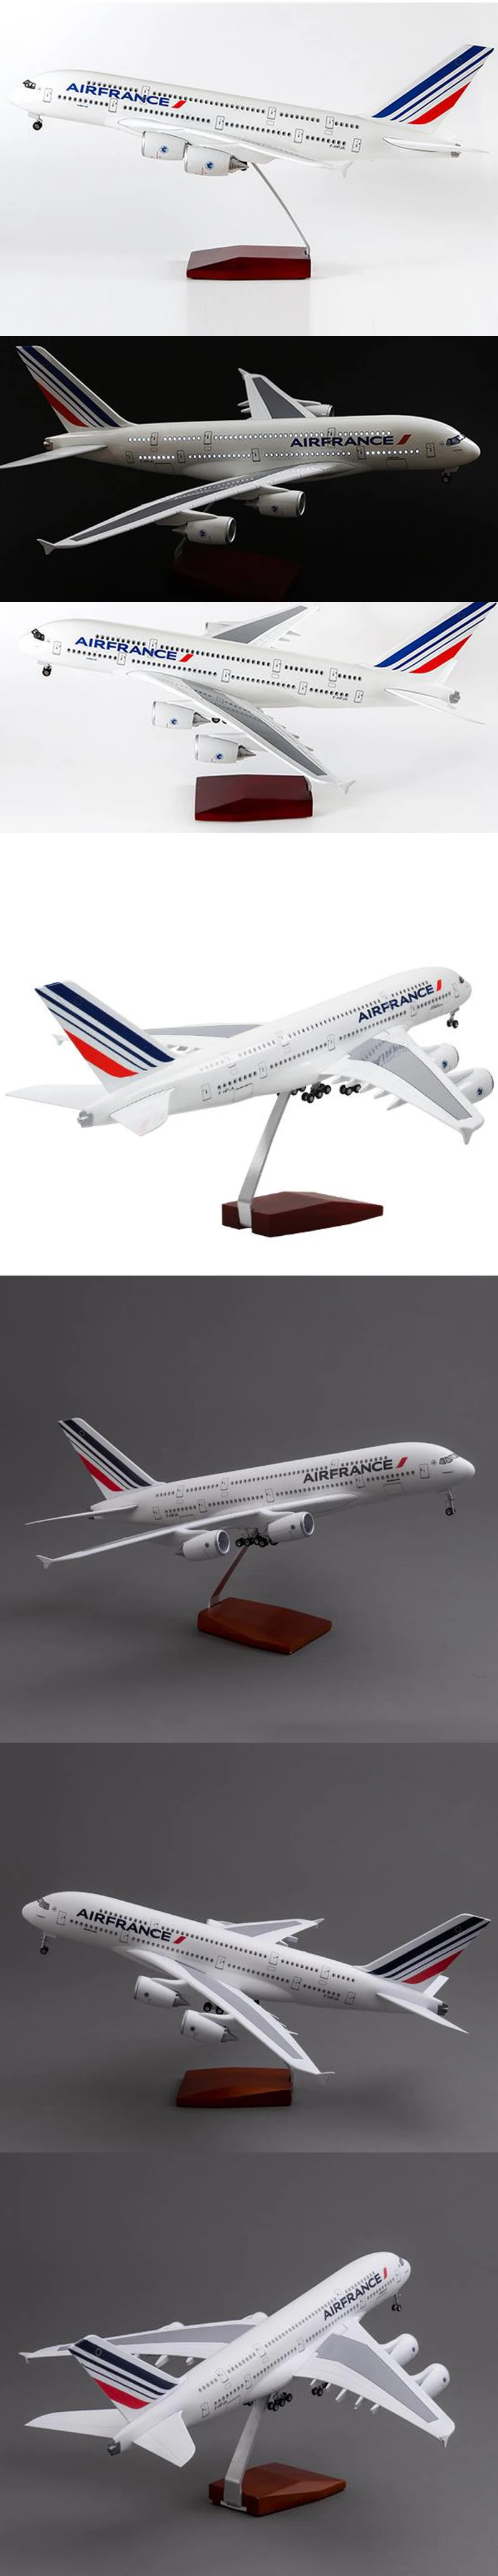 50 см 1/160 весы Air Франция авиакомпания модель самолета Airbus A380 модель самолета Смола самолет с светильник и колеса для сбора